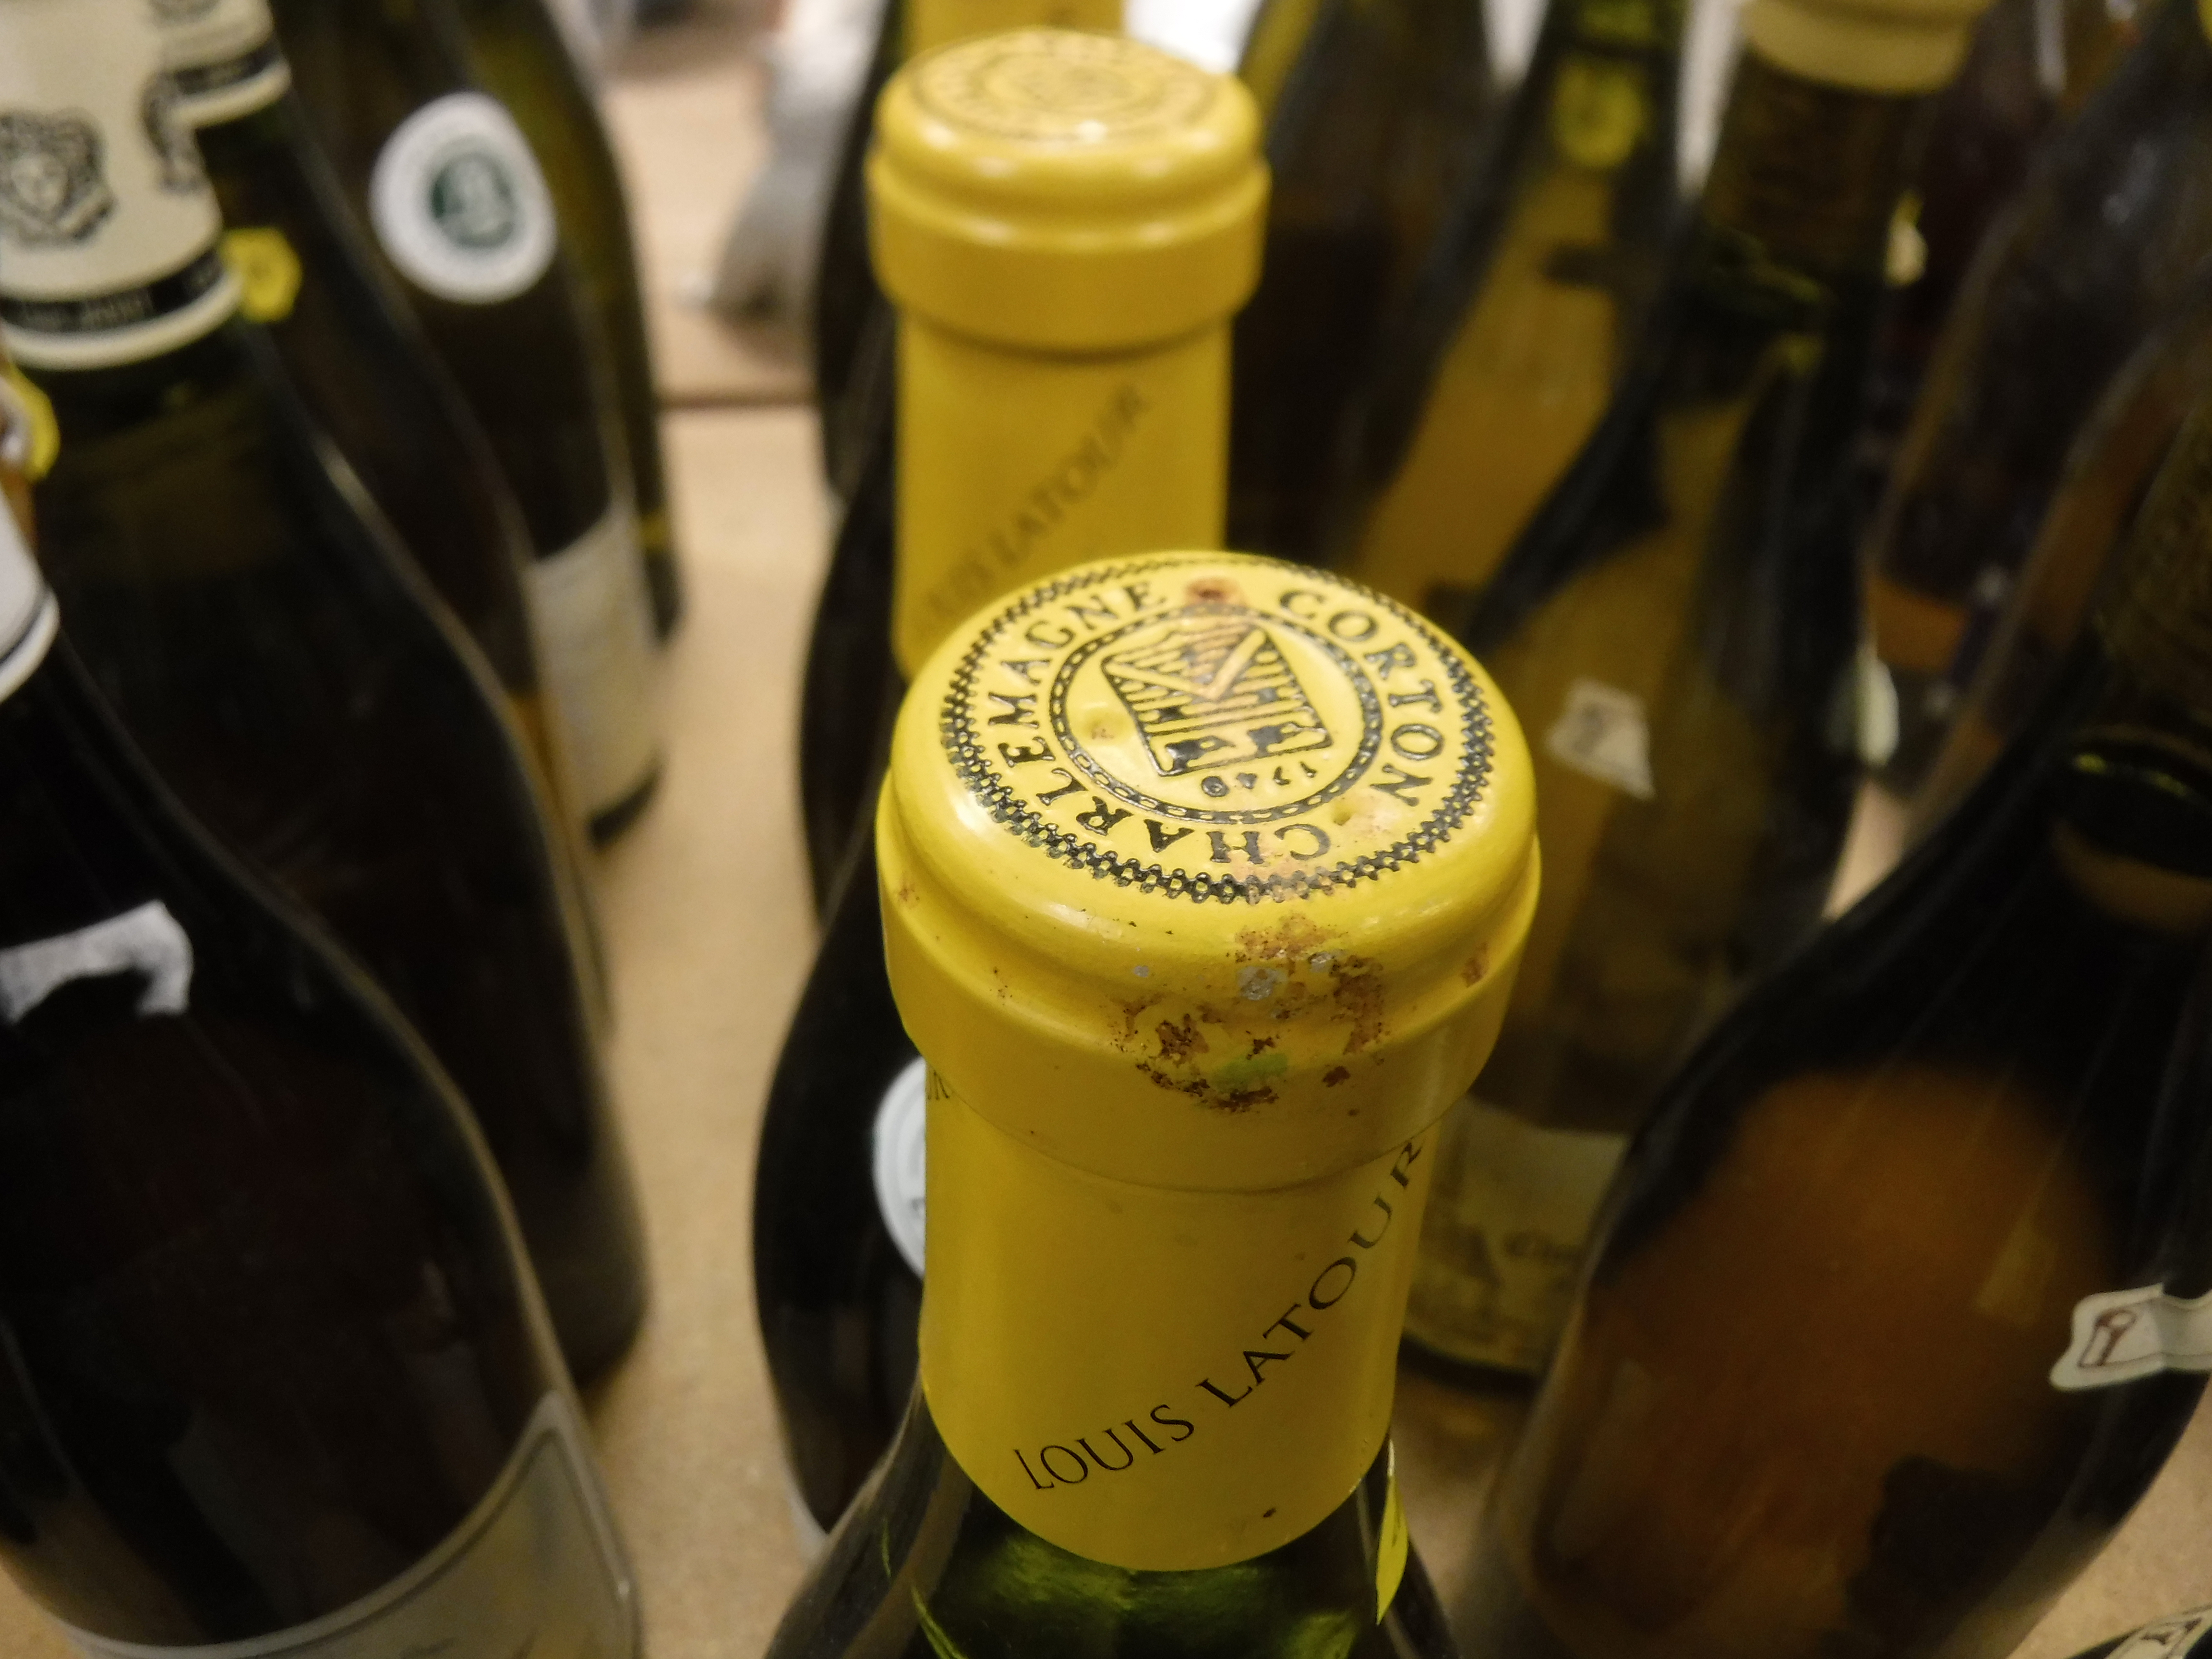 Nine bottles Corton Charlemagne Grand Cru, - Image 20 of 24